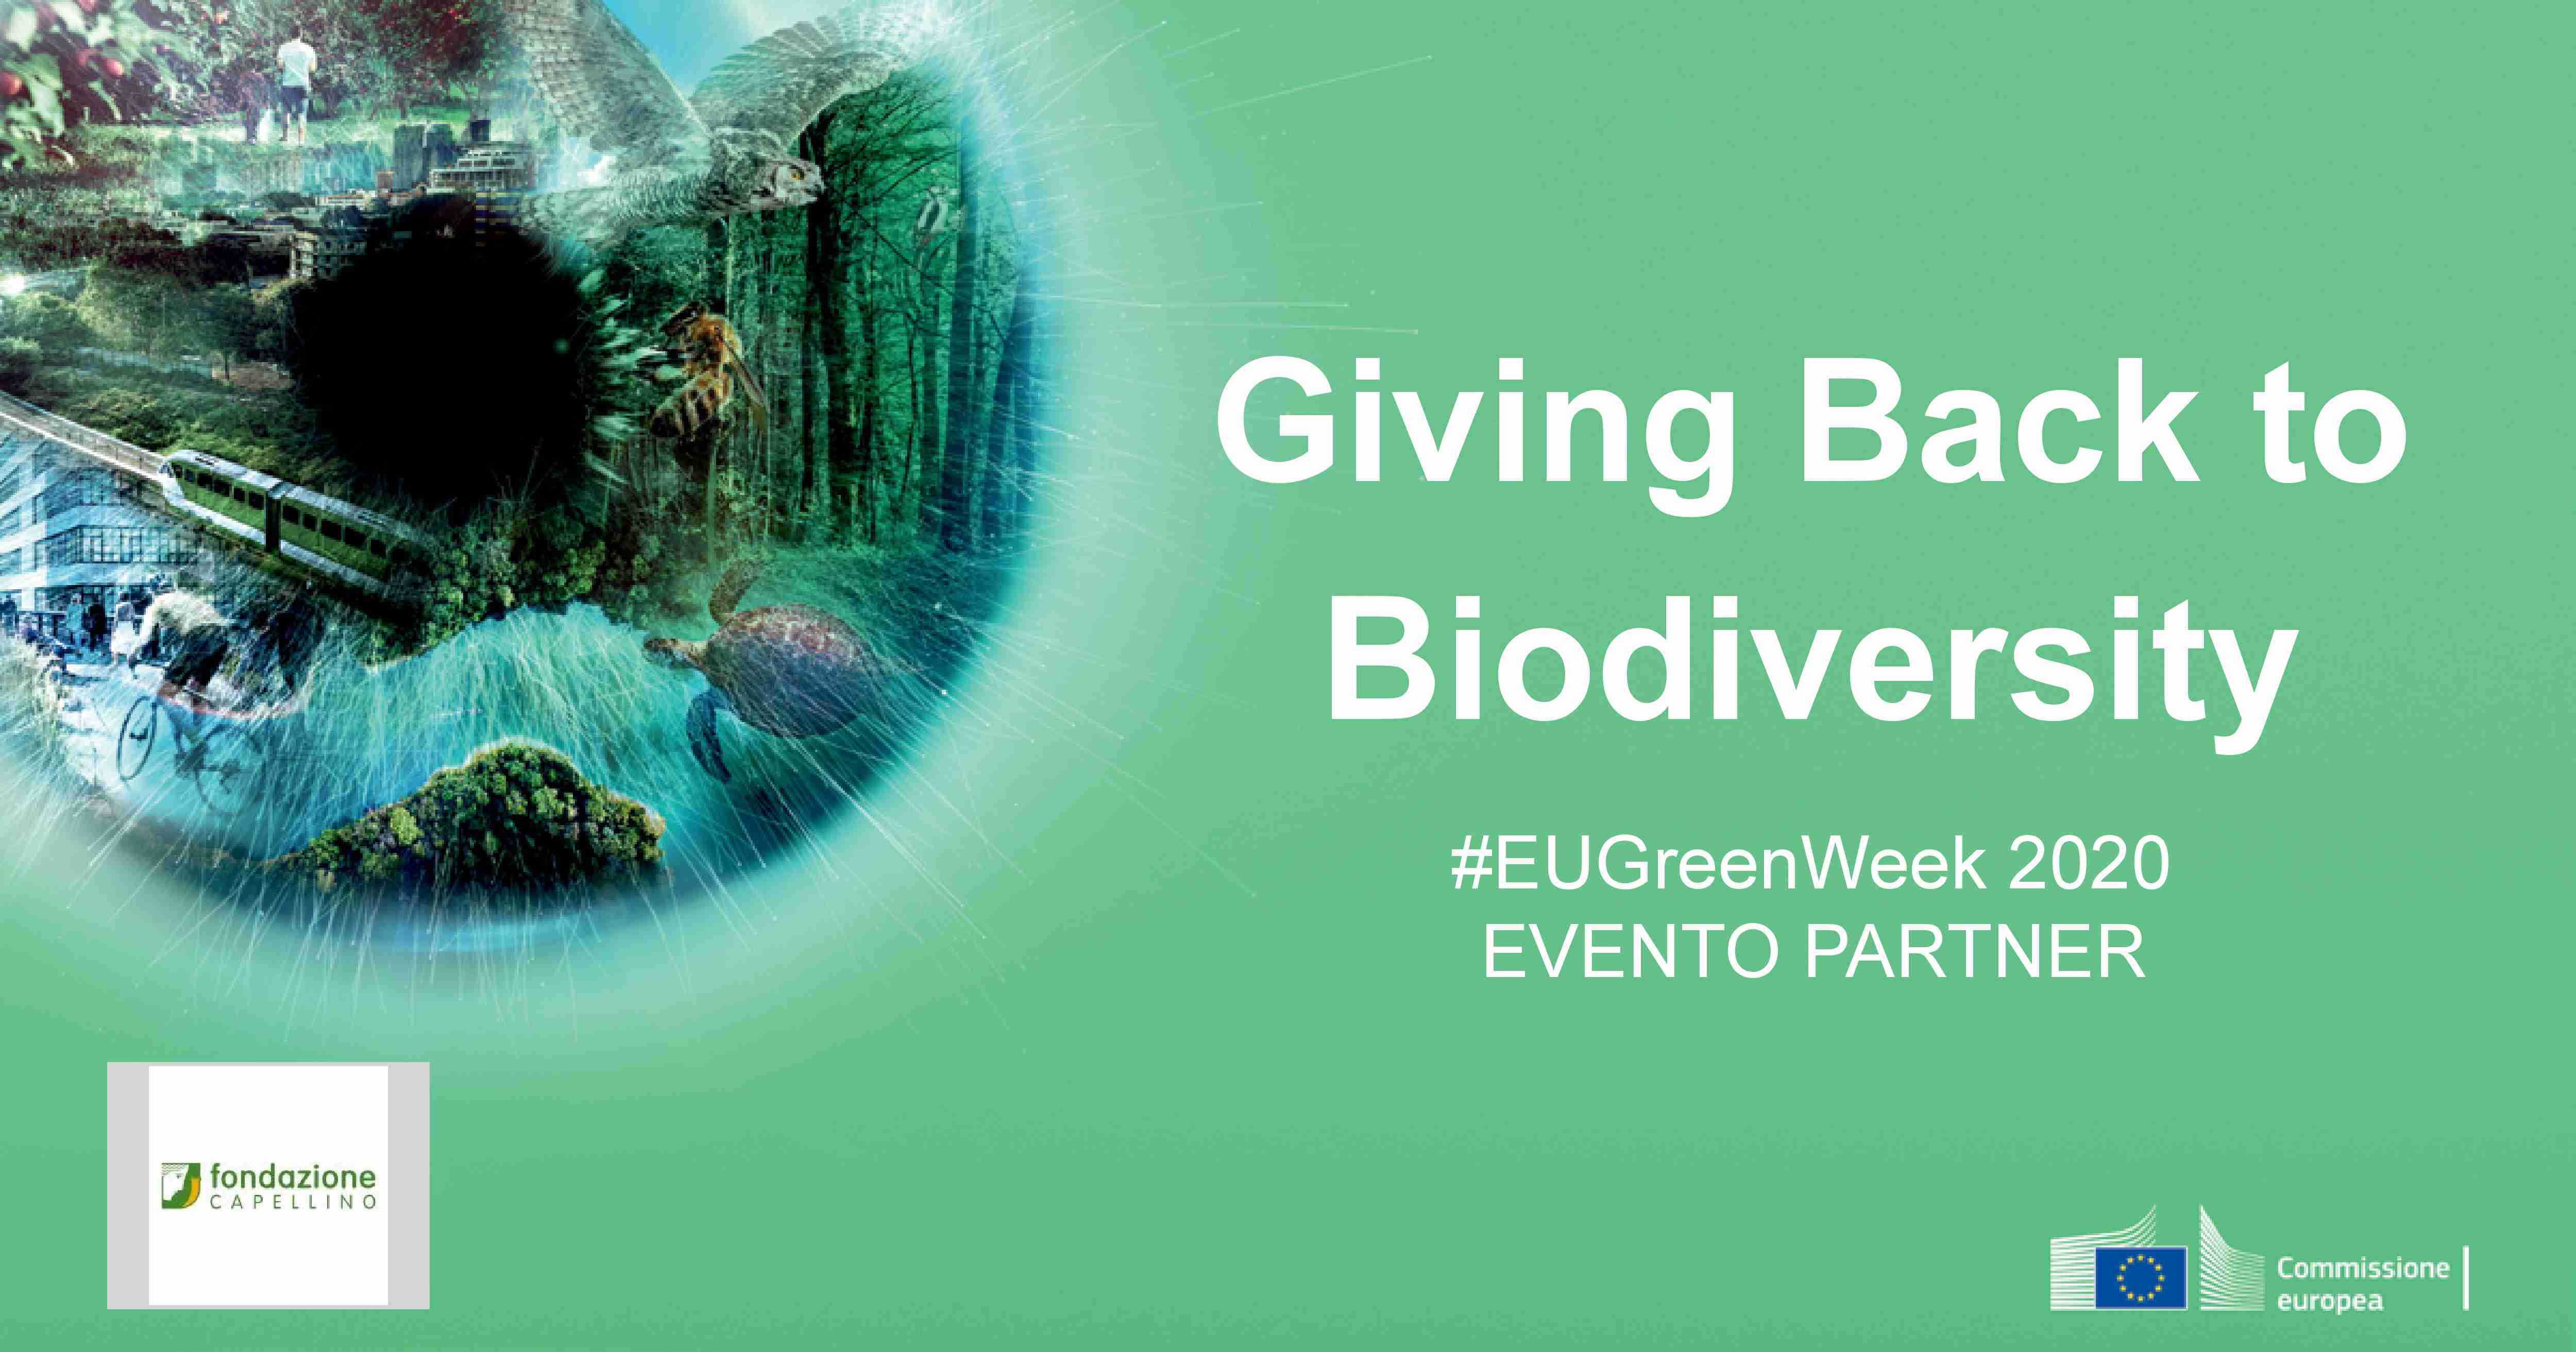 La Fondazione Capellino partner della Green Week 2020 con il webinar Giving Back to Biodiversity